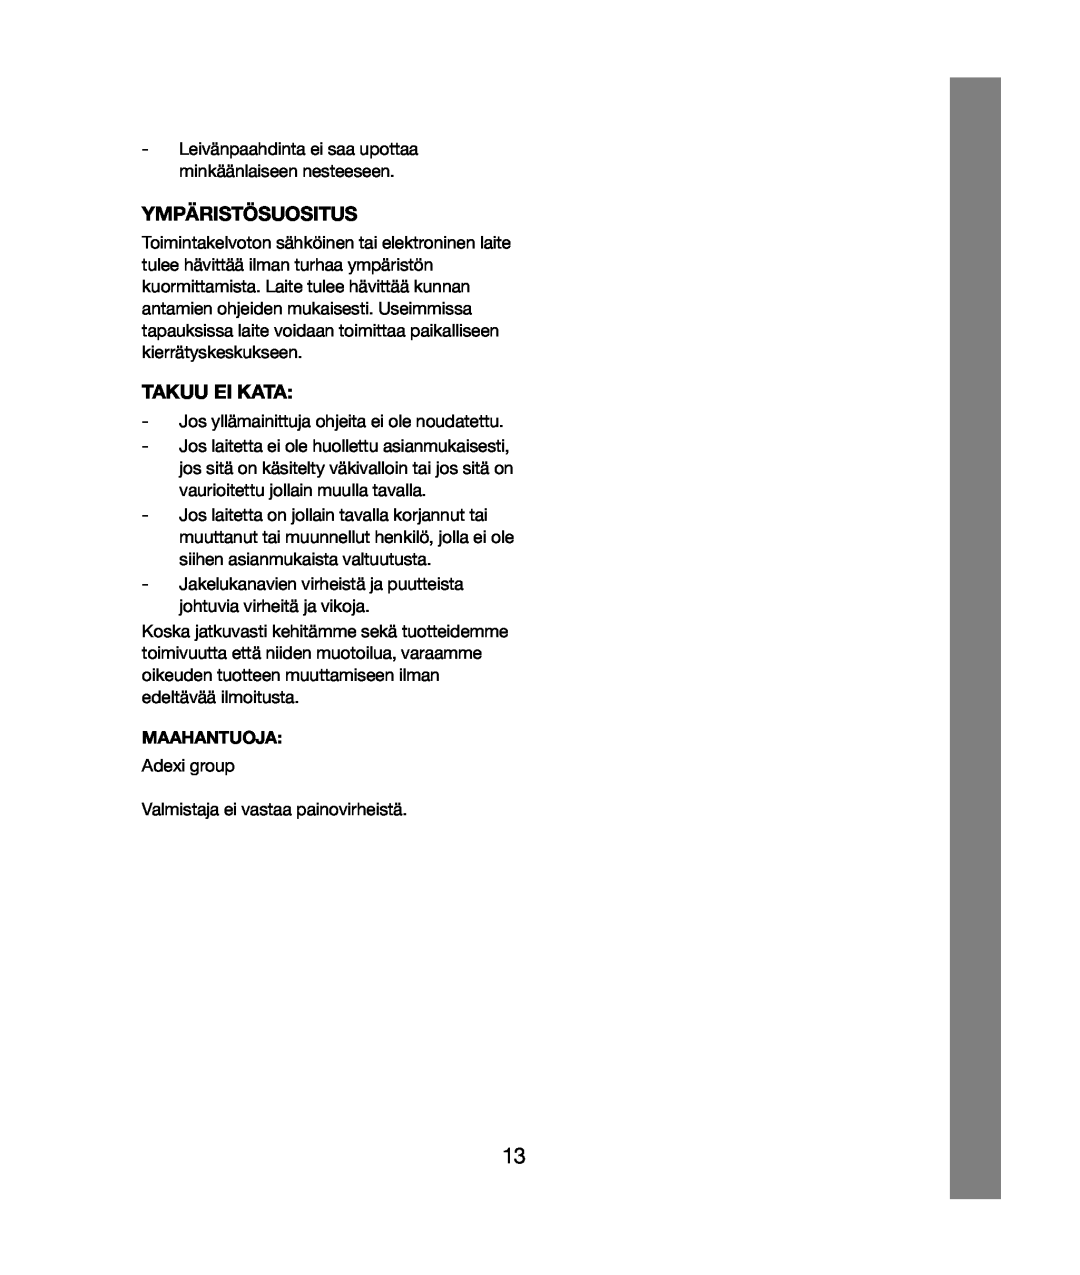 Melissa 243-020 & 021 manual Ympäristösuositus, Takuu Ei Kata, Maahantuoja 